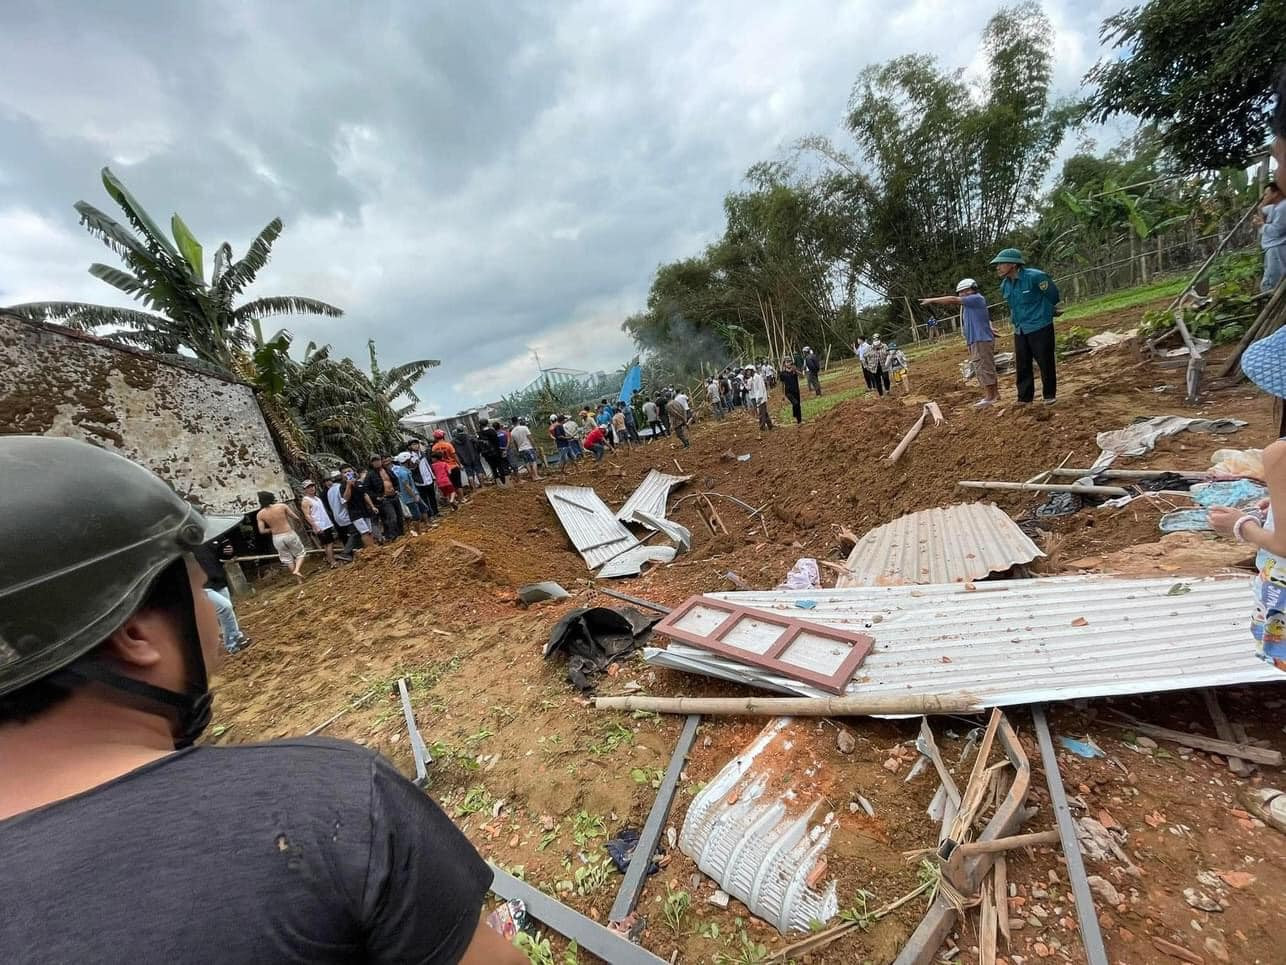 Máy bay rơi ở Quảng Nam khiến một người dân bị chấn thương nặng, nguyên nhân sự cố cũng được phi công kể lại - ảnh 3